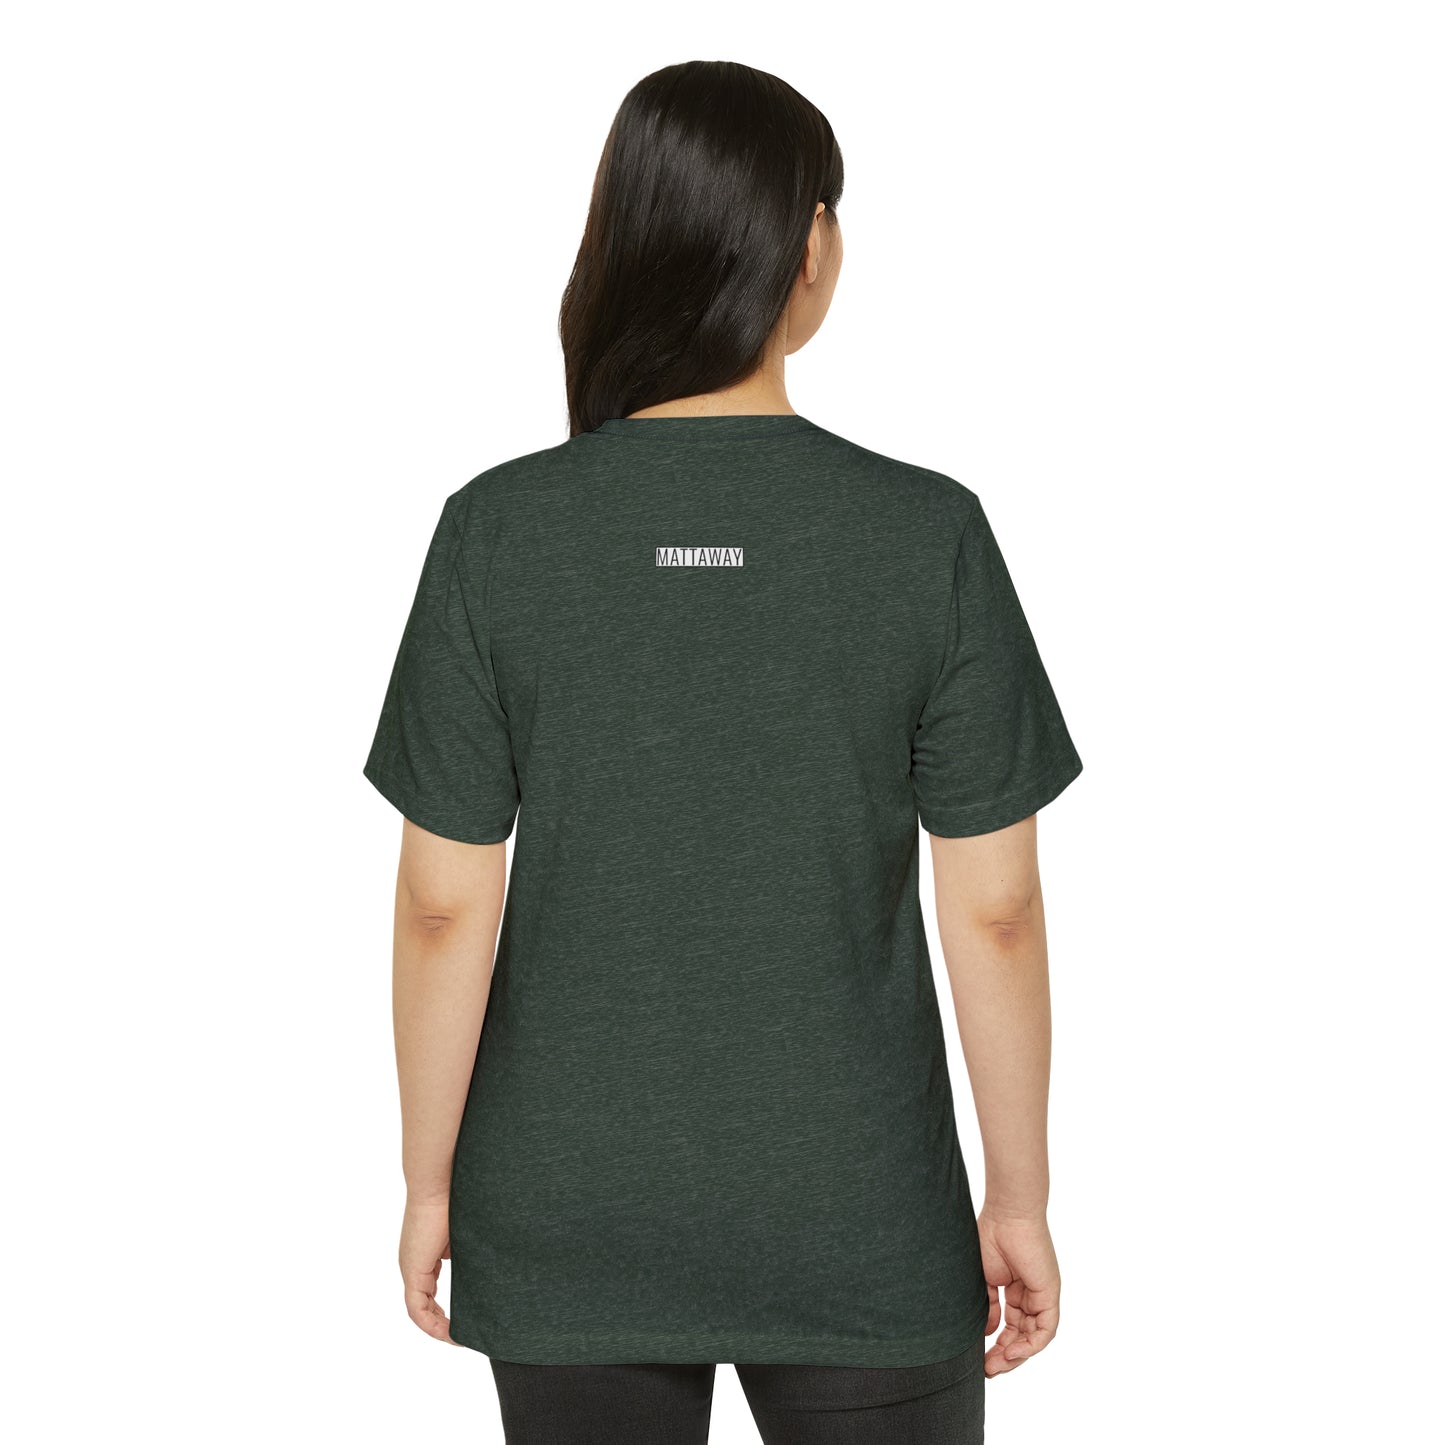 MINIMAL SHAPES 104 - Unisex Recycled Organic T-Shirt